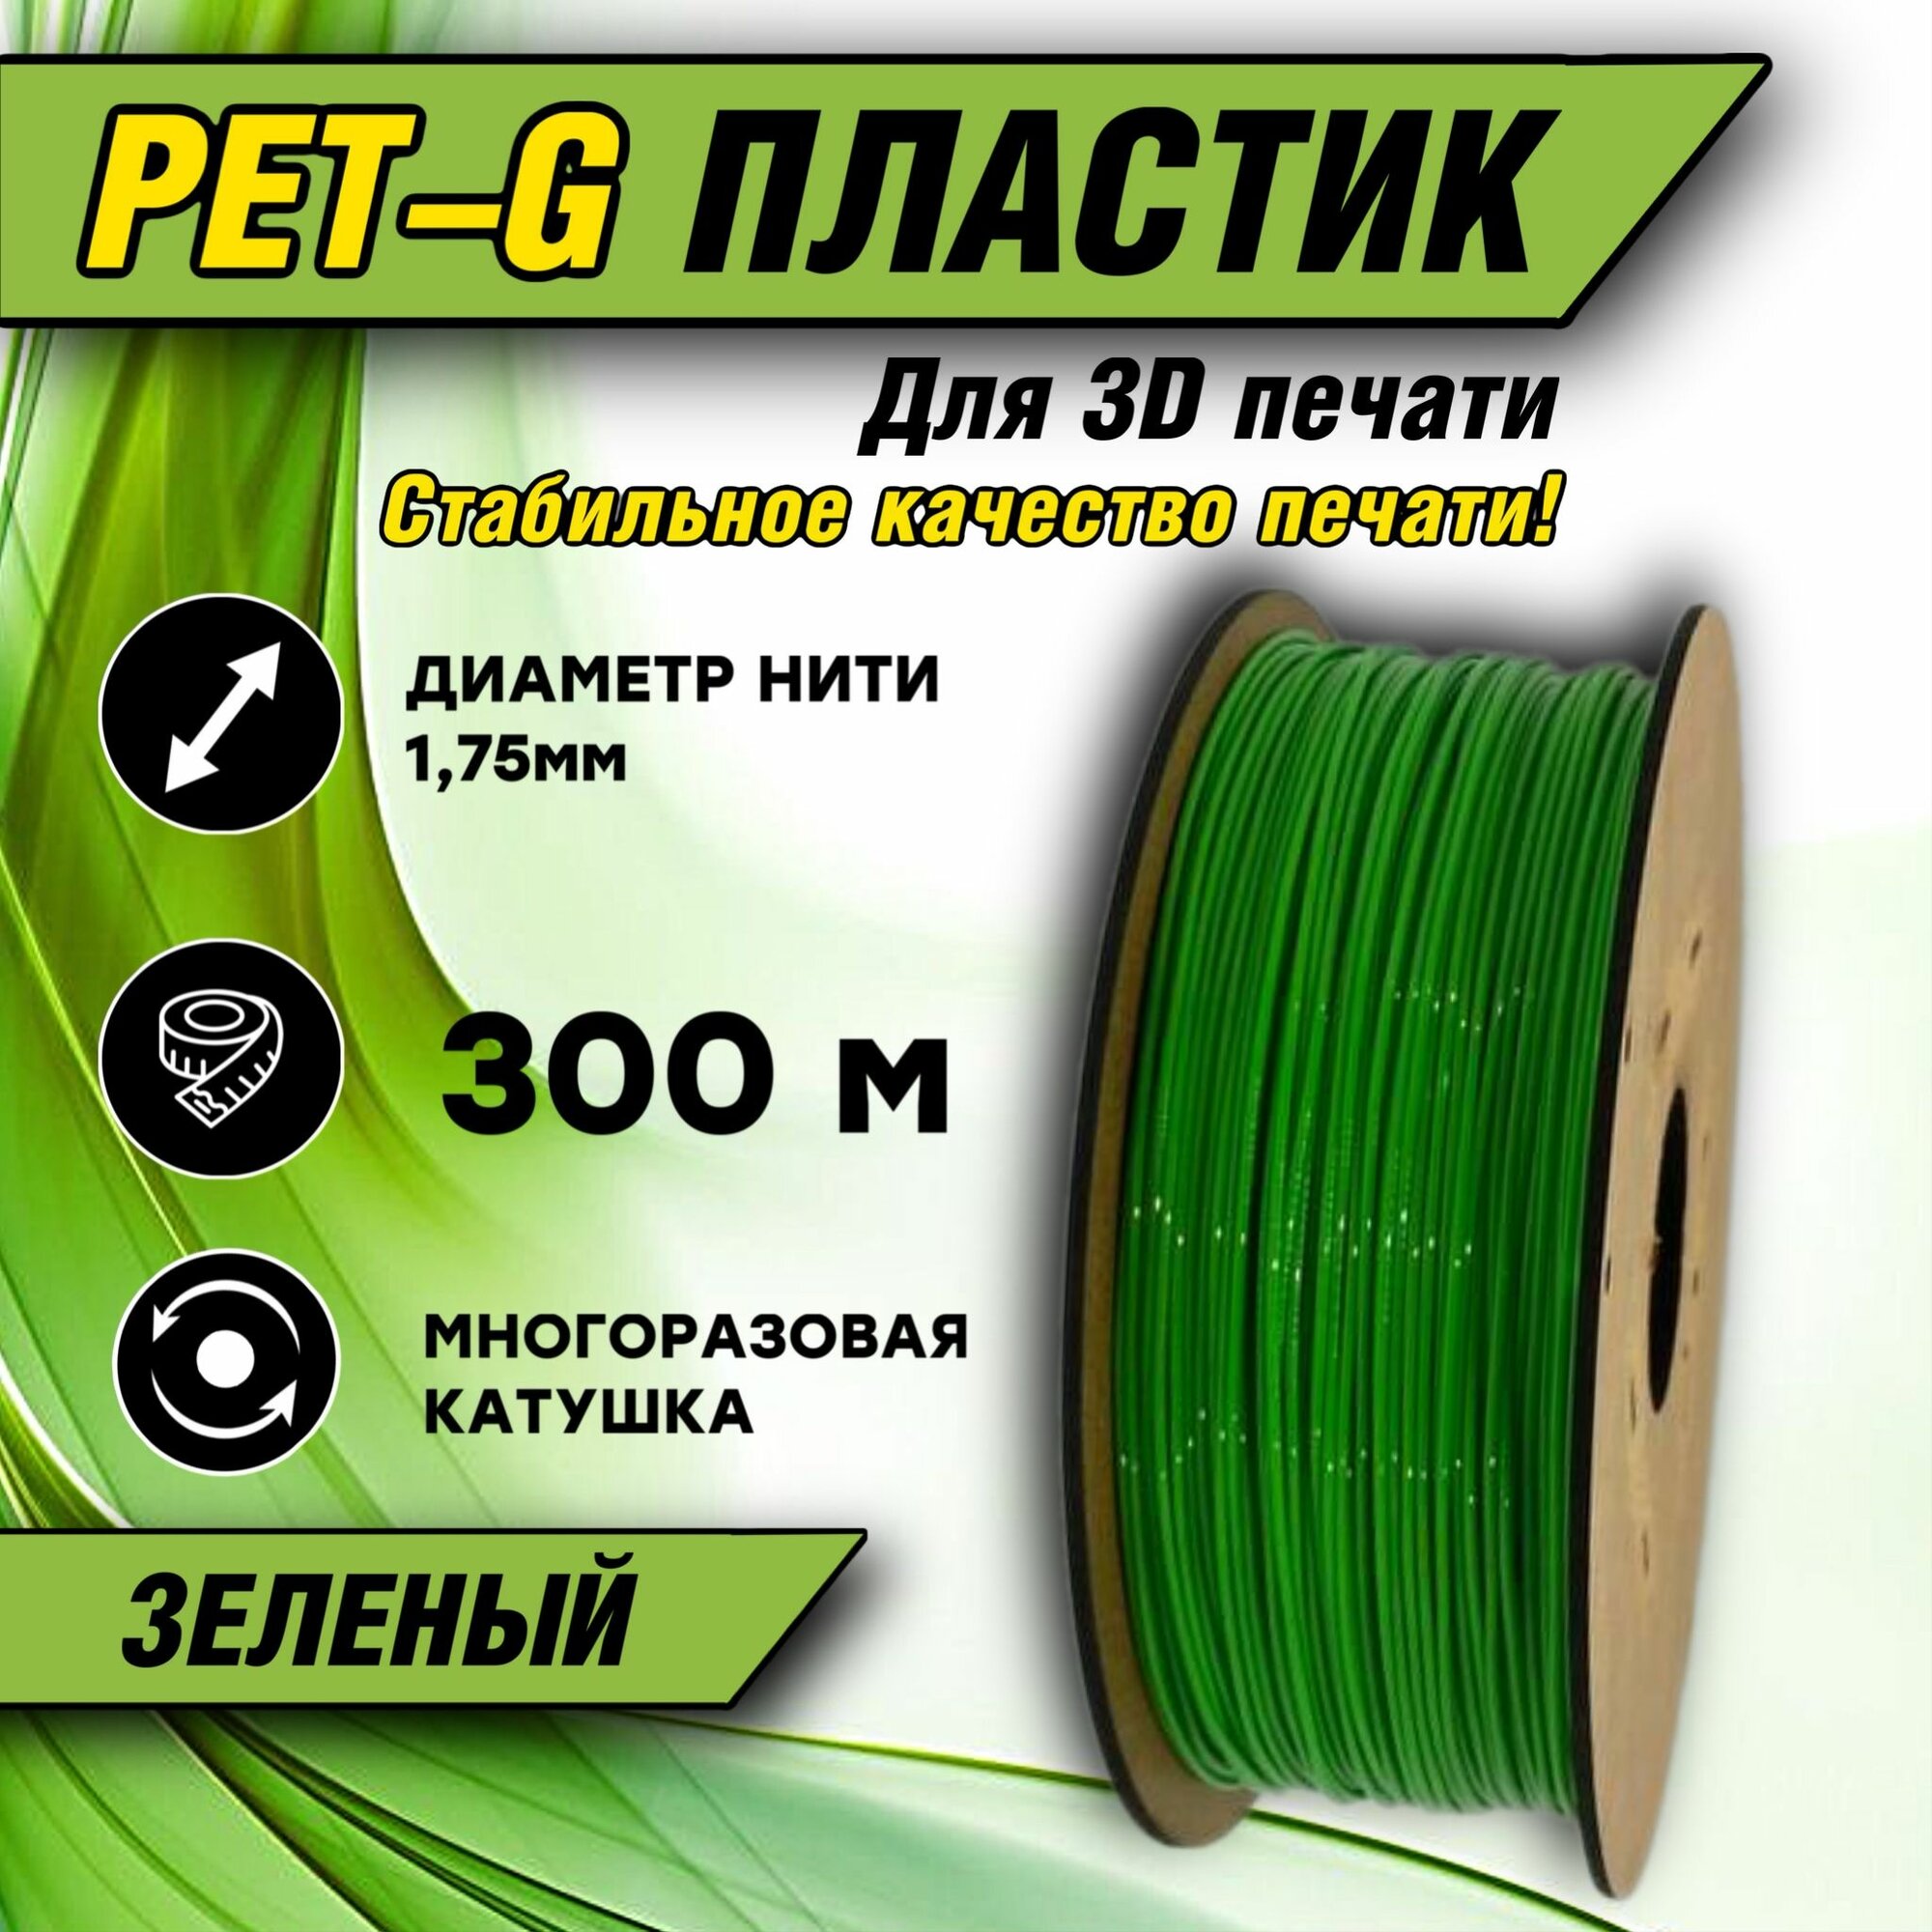 Зеленый пластик PETG 300 метров